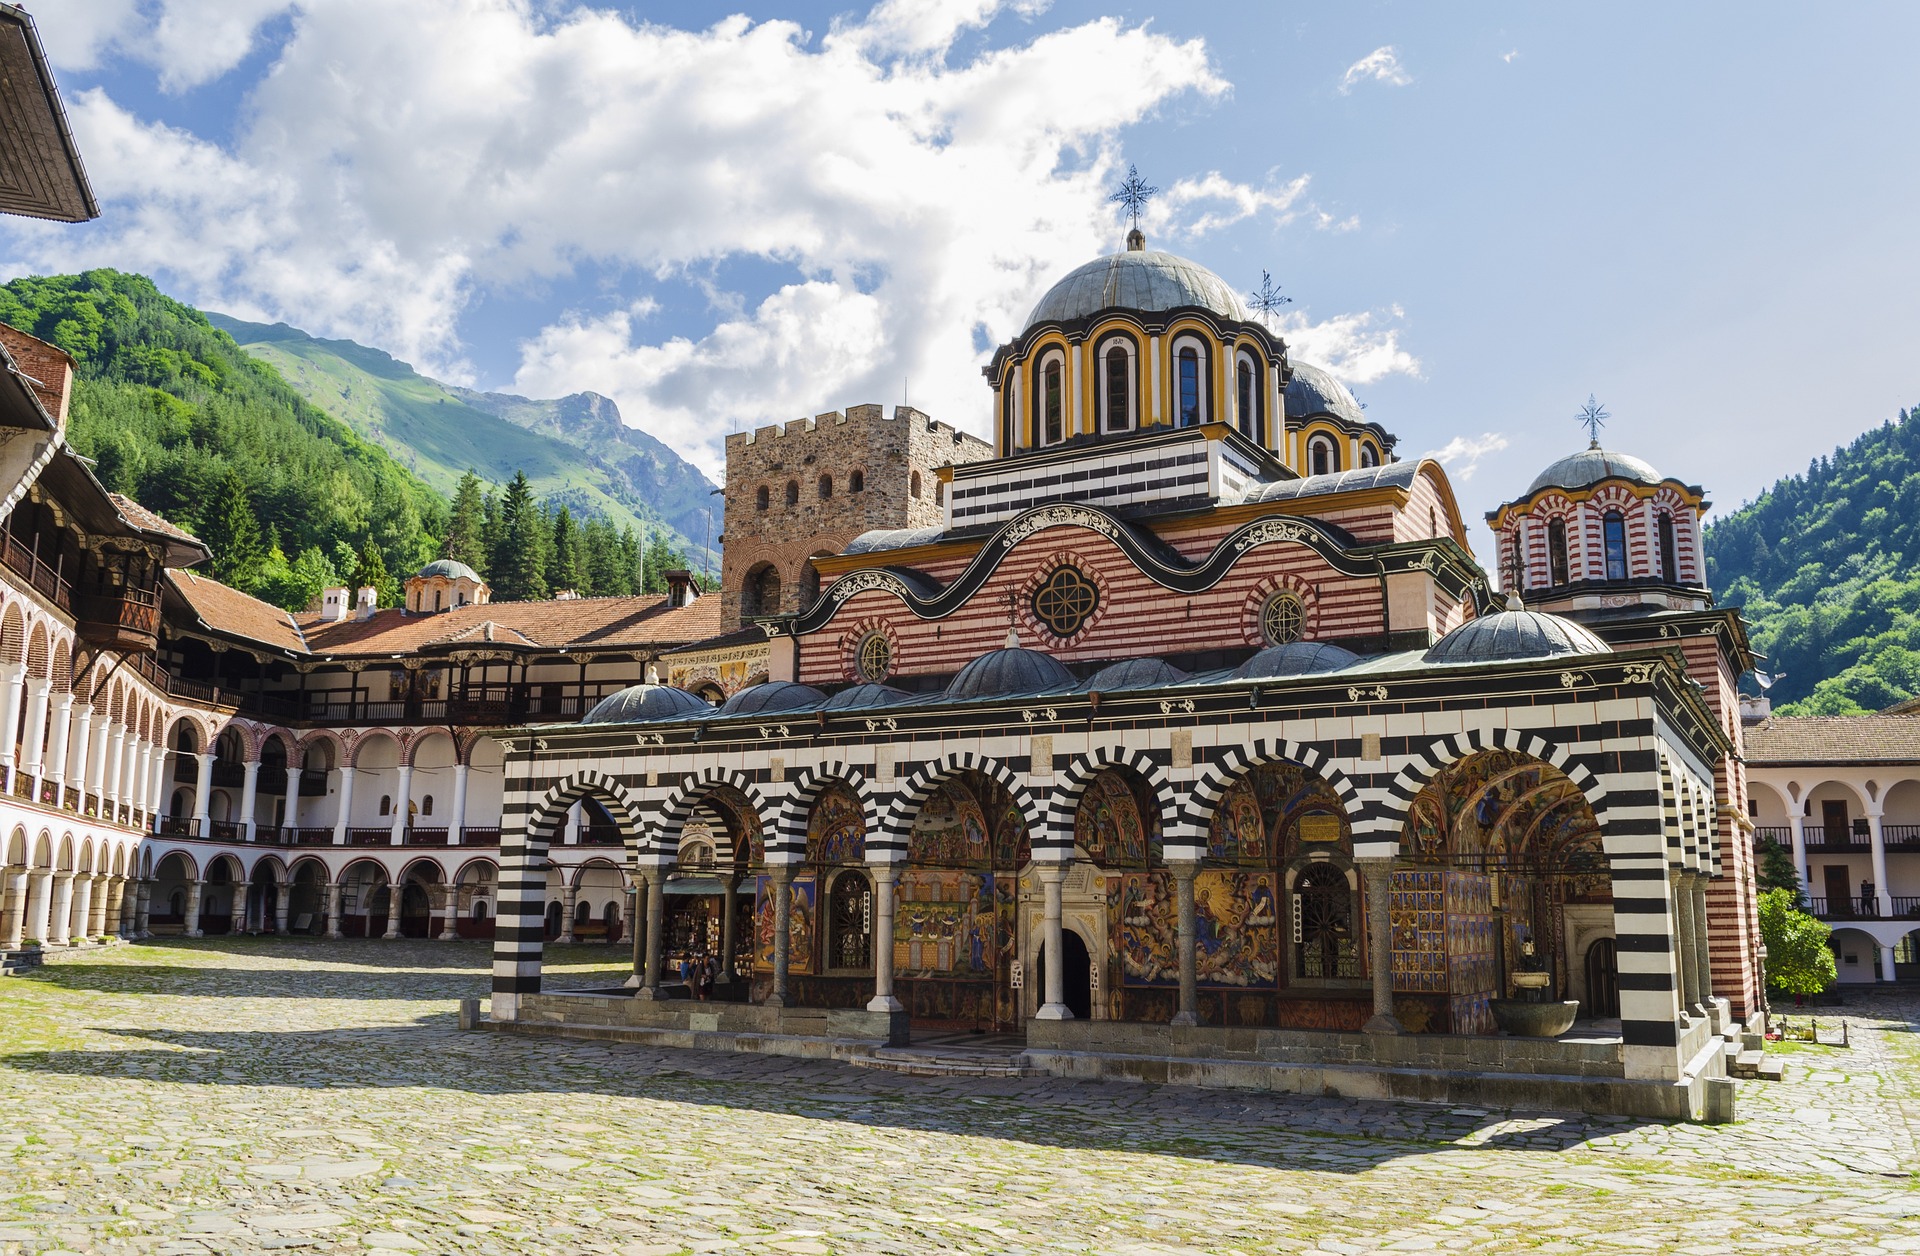 Best off peak season travel tips in Bulgaria by OffPeakSeason.com